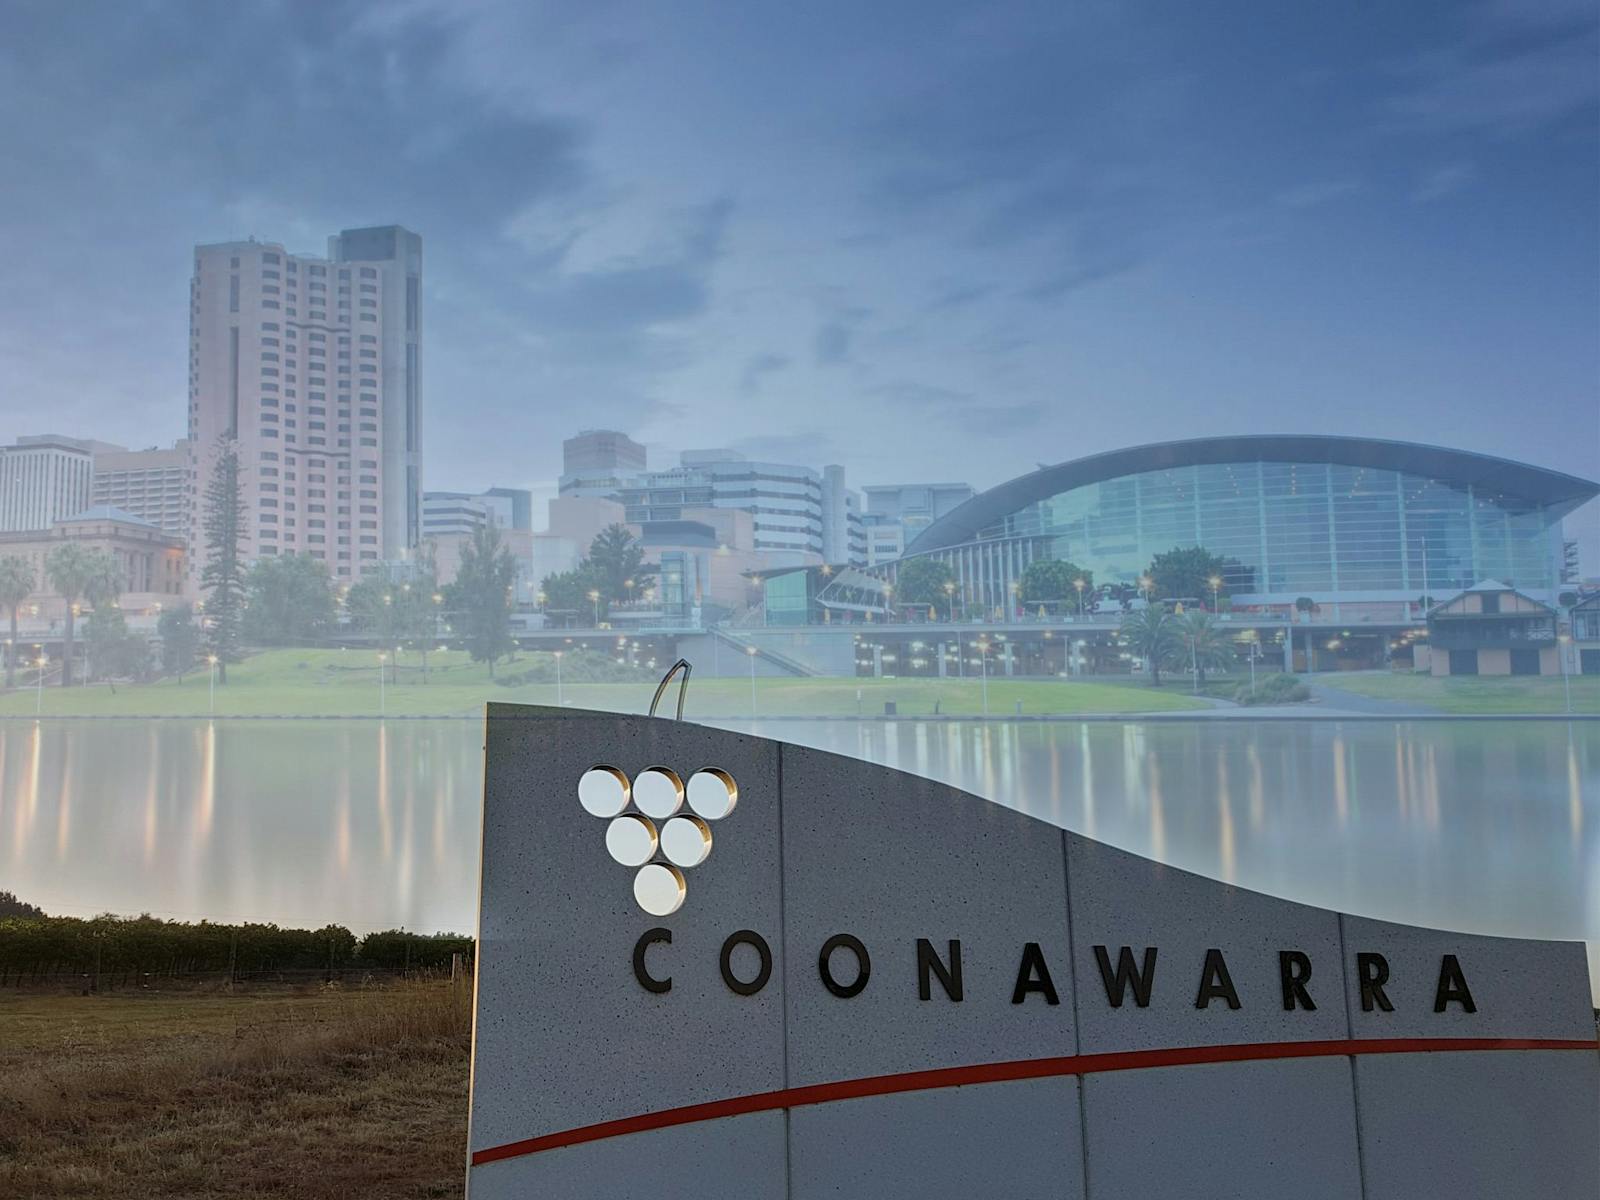 Image for 2019 Coonawarra Roadshow Adelaide - Jack Estate